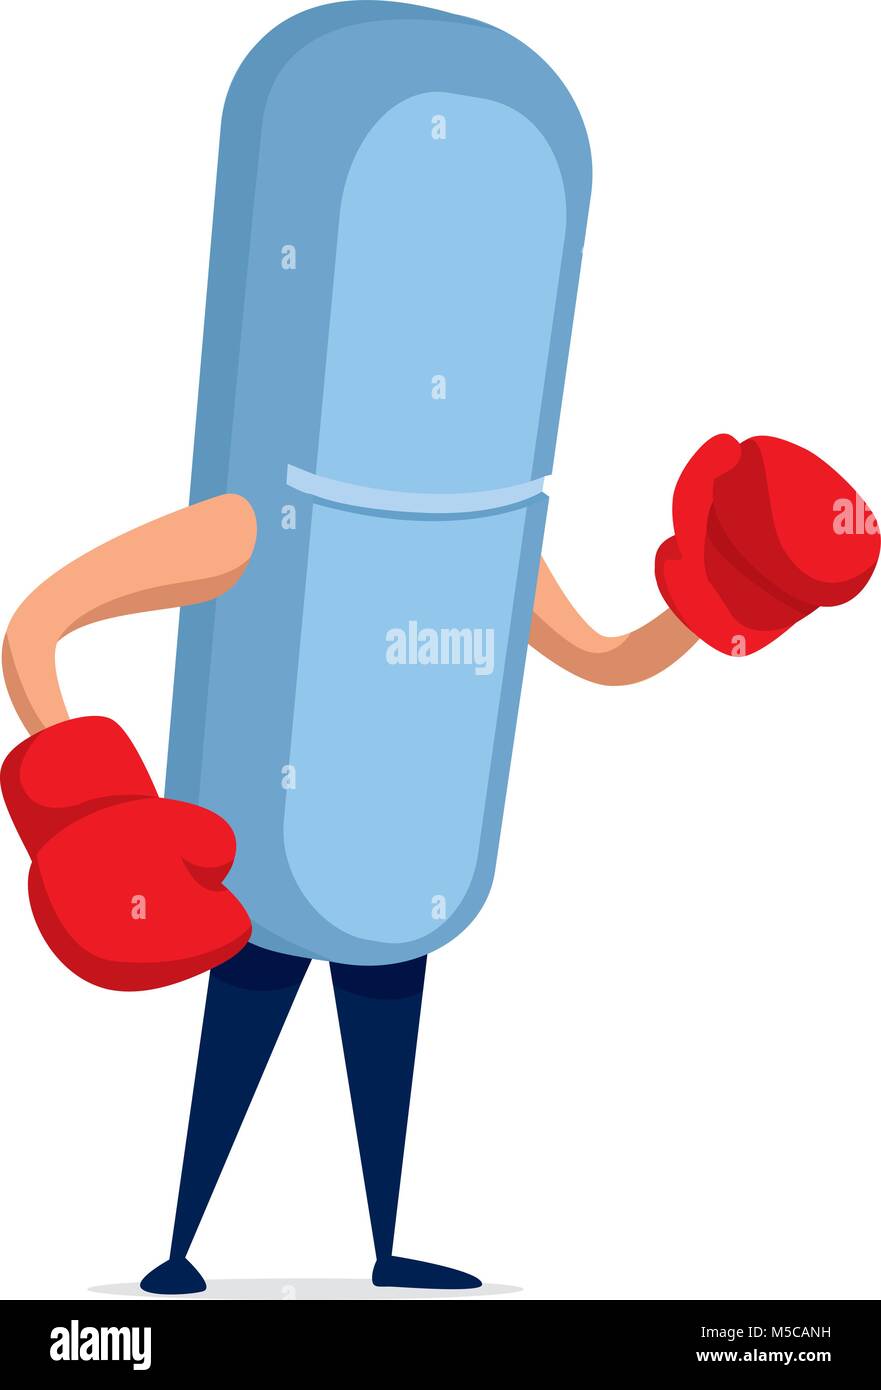 Ilustración de dibujos animados de píldora medicamento listo para luchar Ilustración del Vector